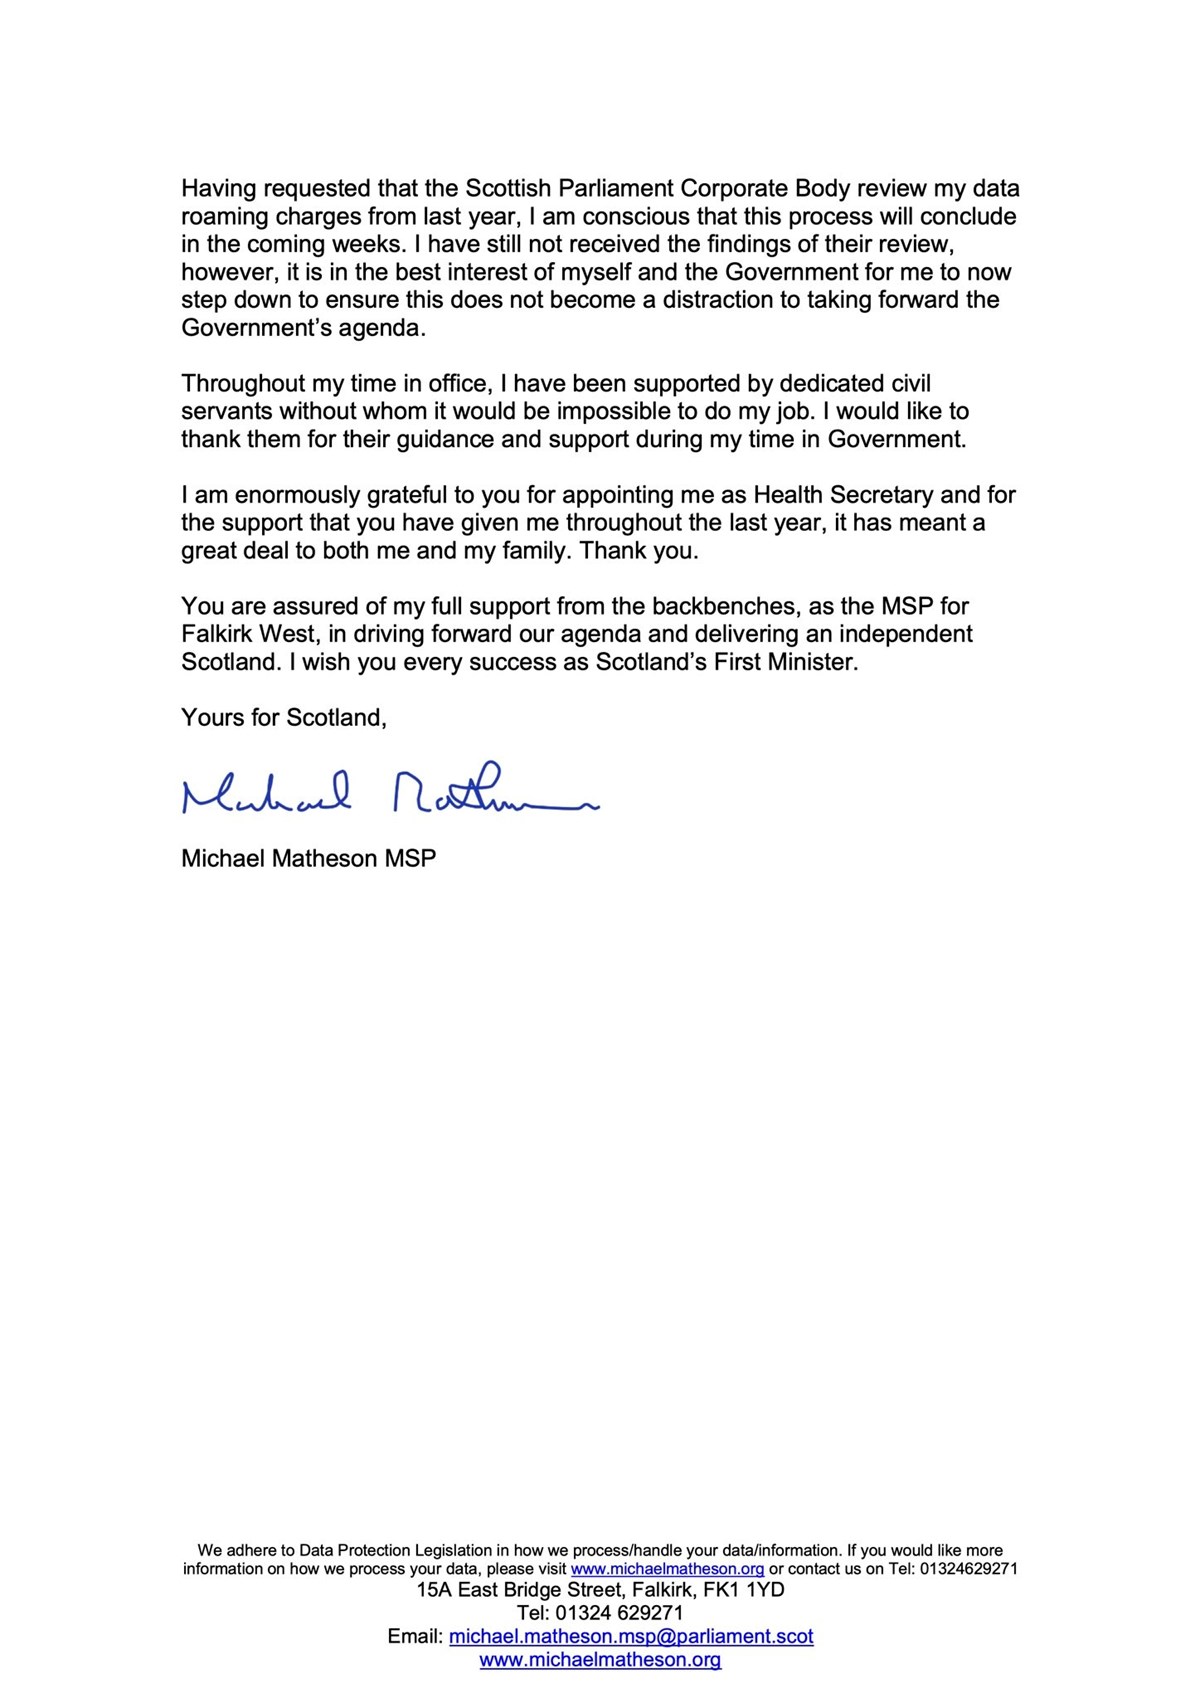 İskoçya Sağlık Bakanı Michael Matheson'dan açıklama: Çocuklarının internet faturası istifa getirdi